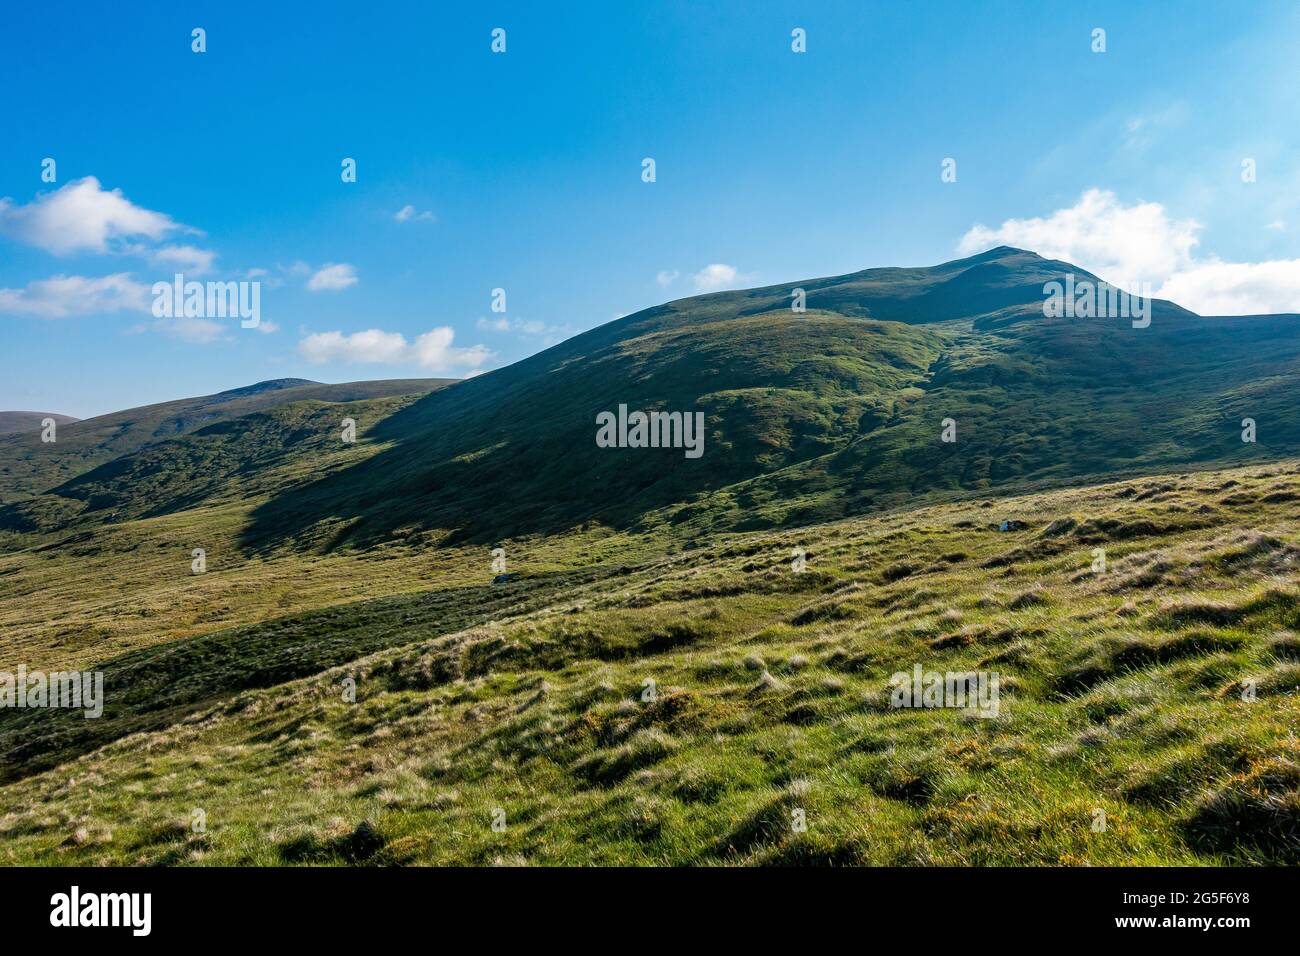 La montaña munro de Meall Corranaich, parte de la cordillera Ben Lawers en Escocia Foto de stock